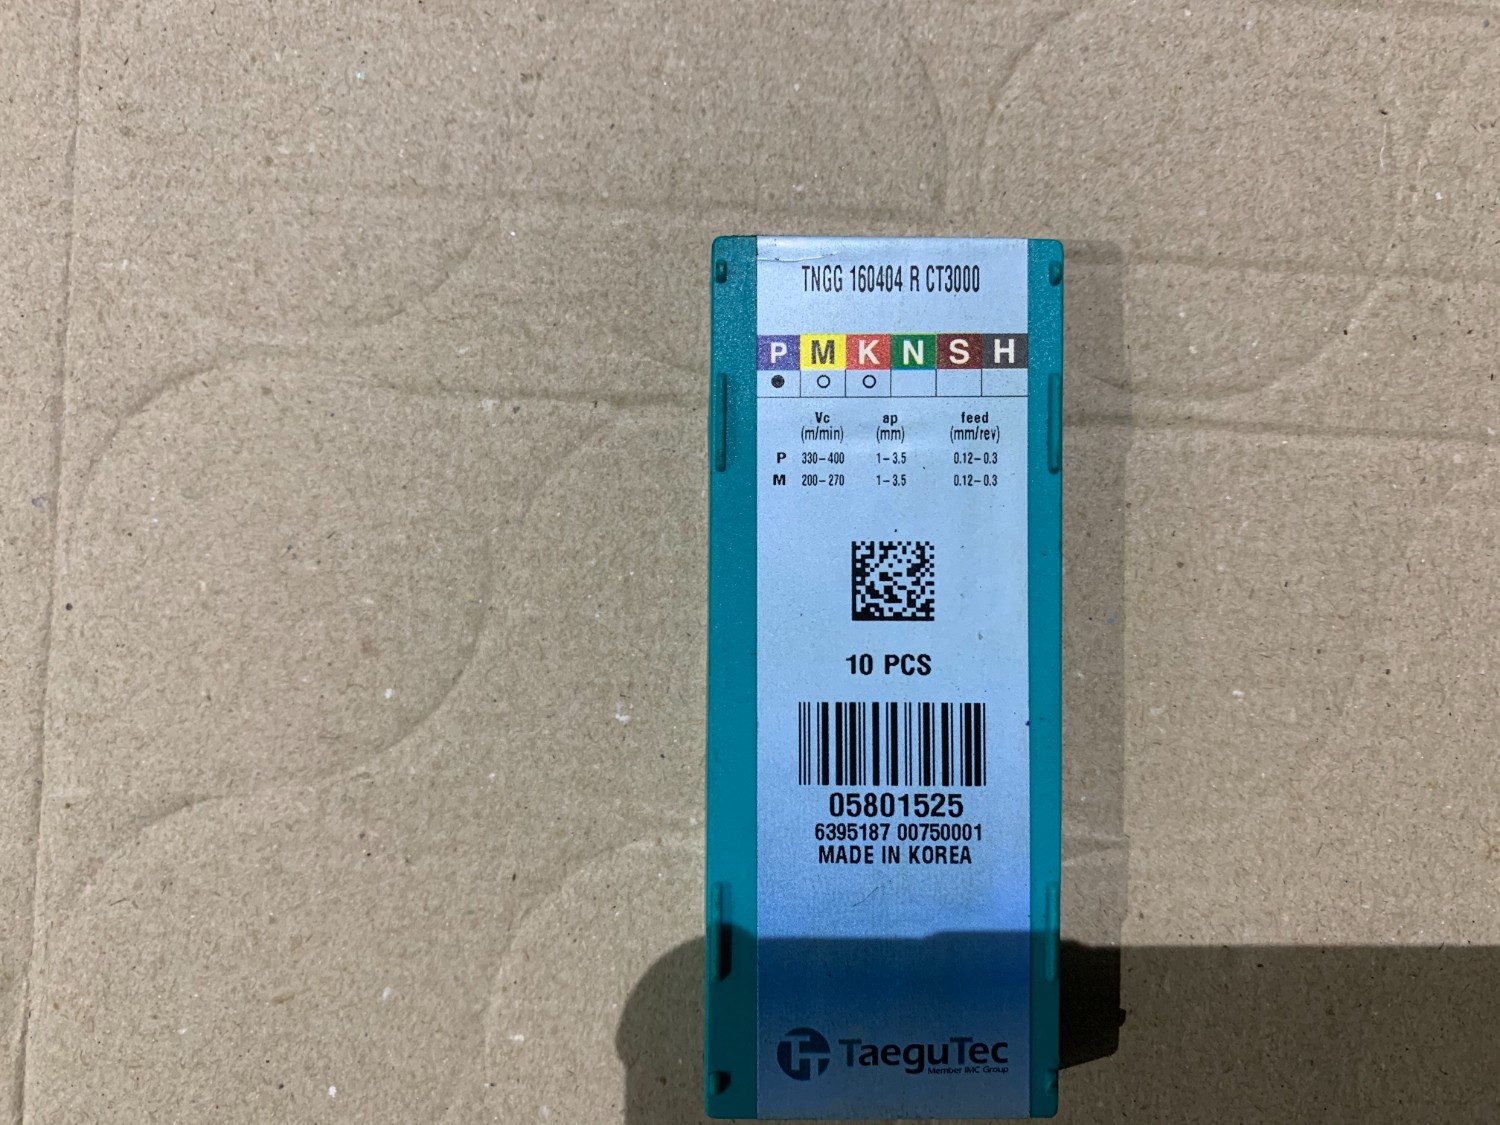 中古Cutting Exchange Chip 【チップ】TNGG160404R-CT3000 Taegutec/テグテック